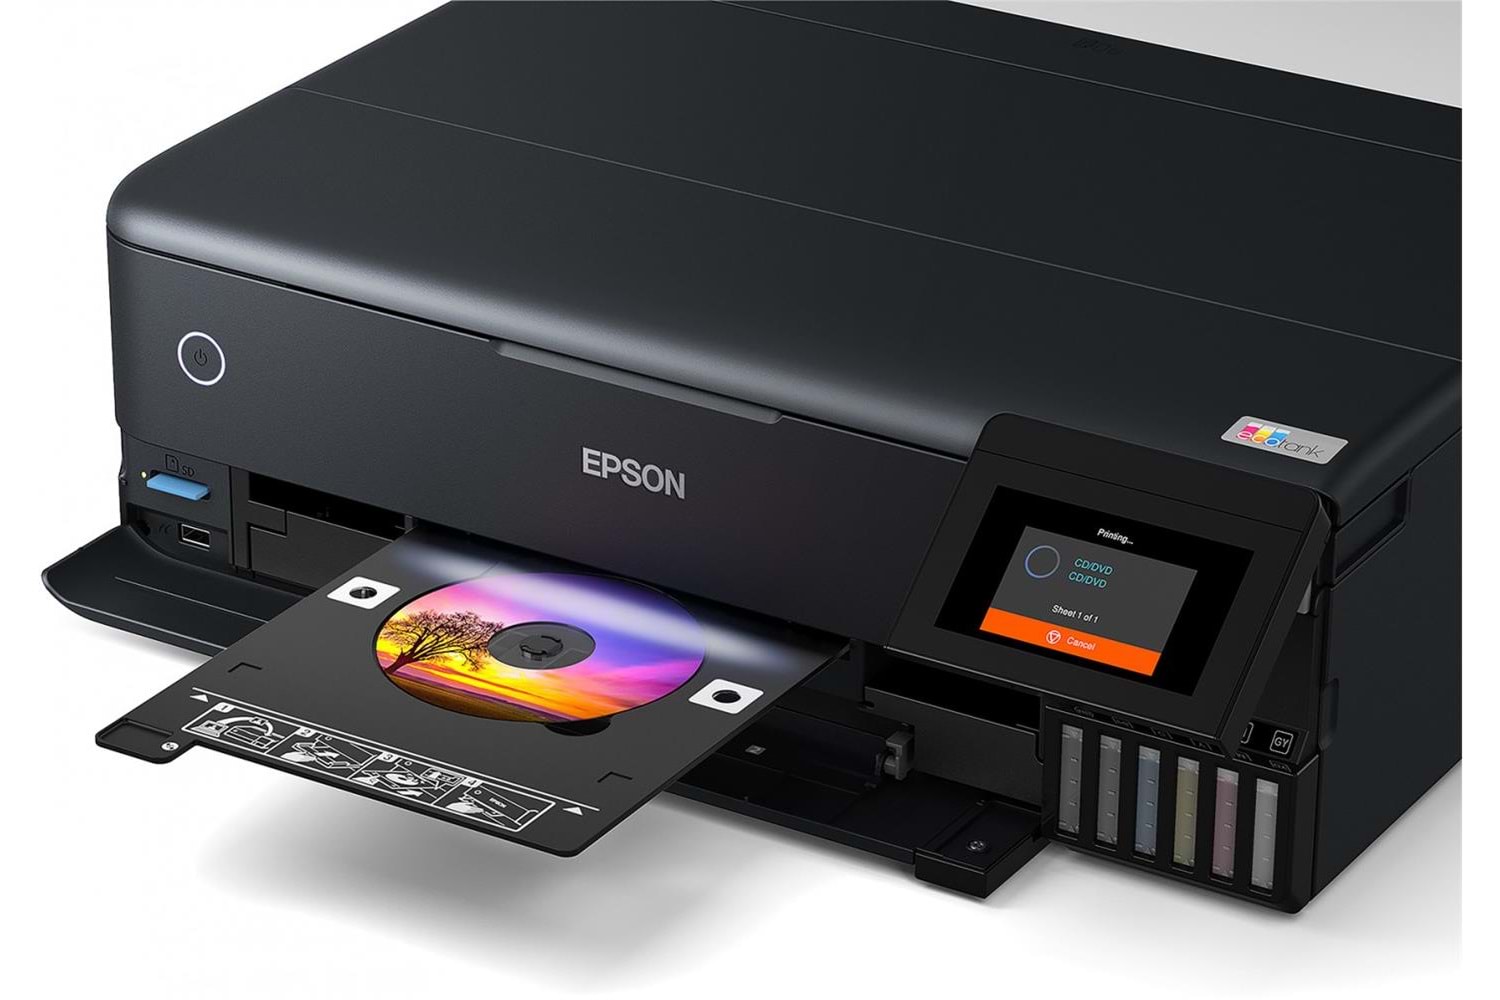 Epson L8160 MEA Yazıcı-Tarayıcı-Fotokopi Renkli Mürekkep Tanlı Yazıcı (6 RENK)